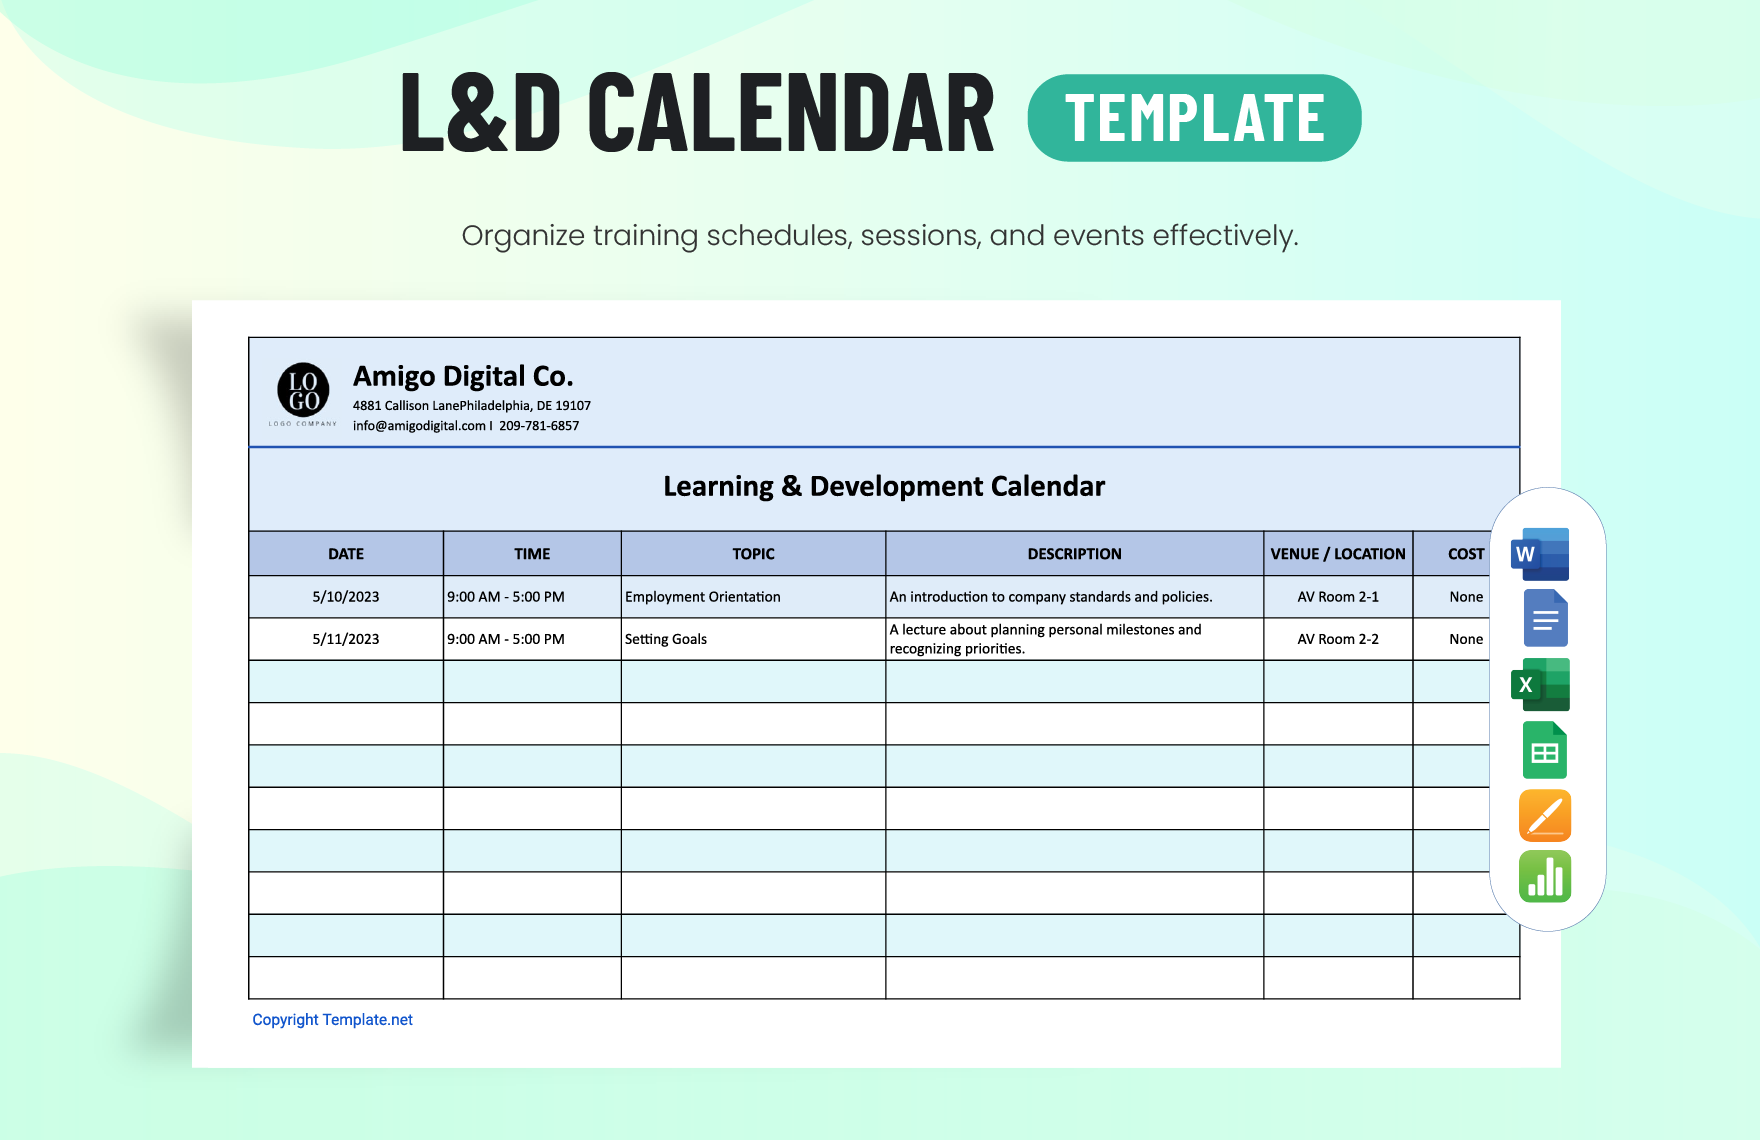 L&D: Calendar Template